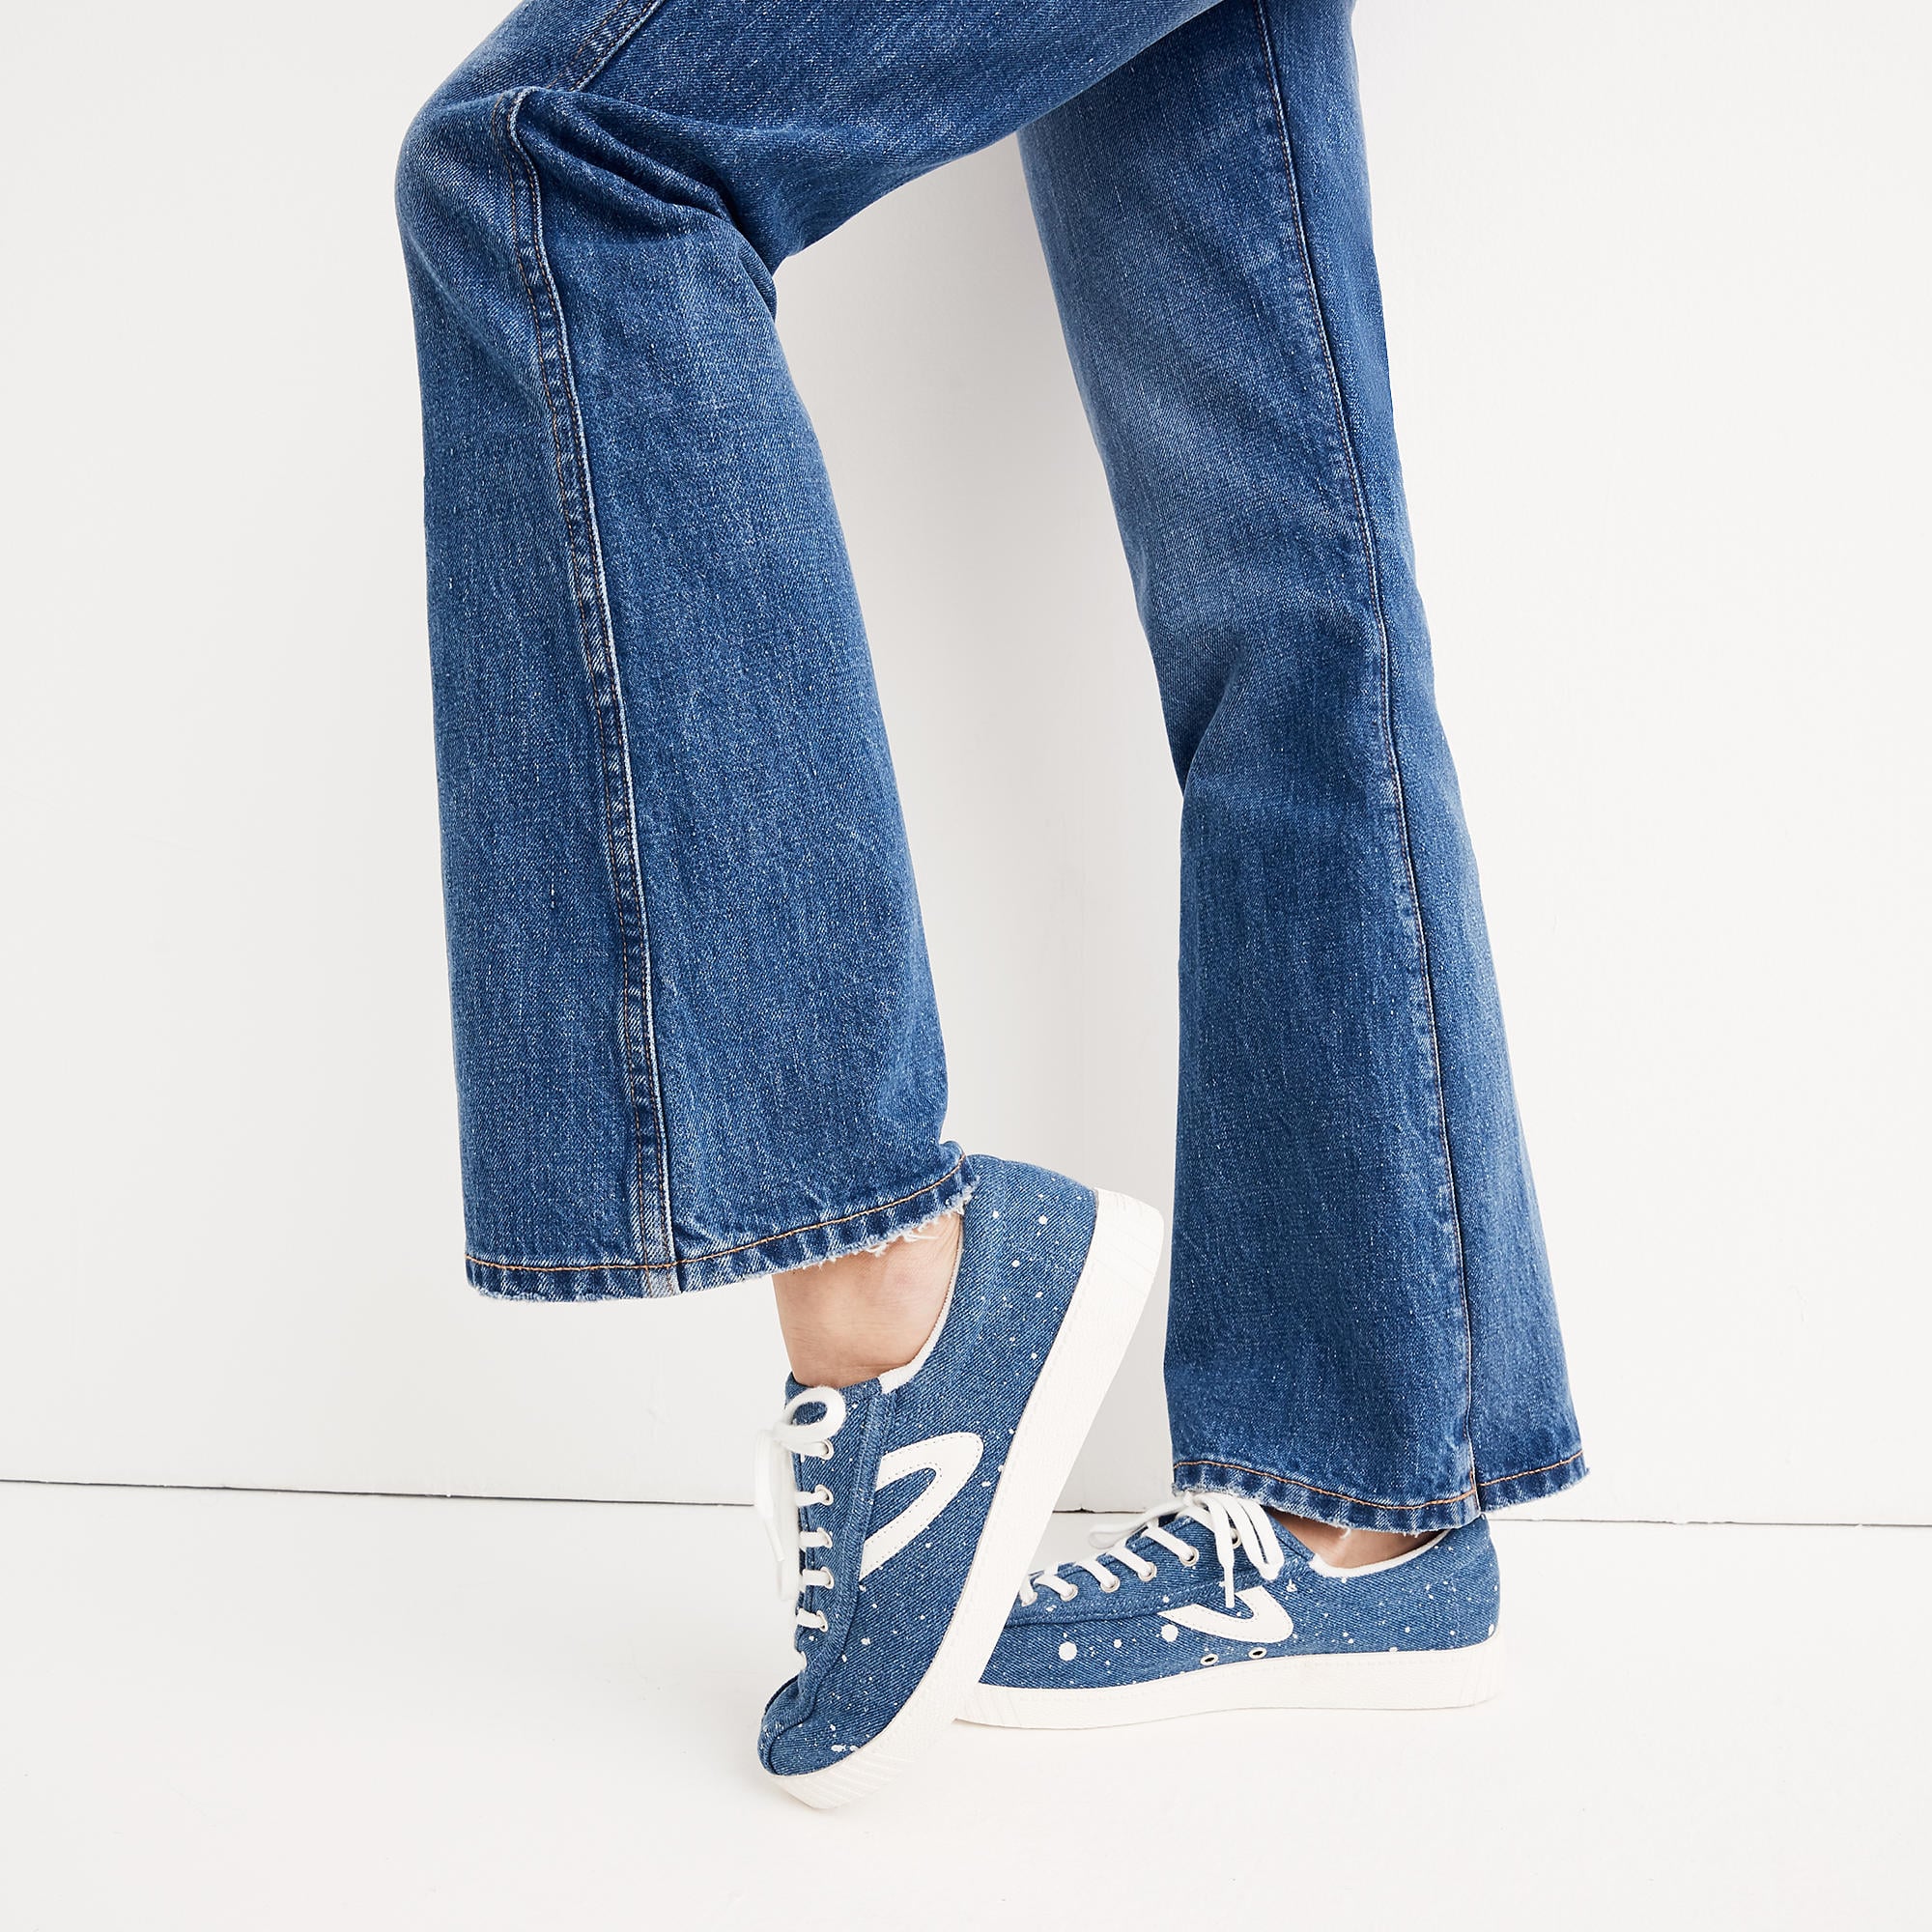 best flare jeans for short legs